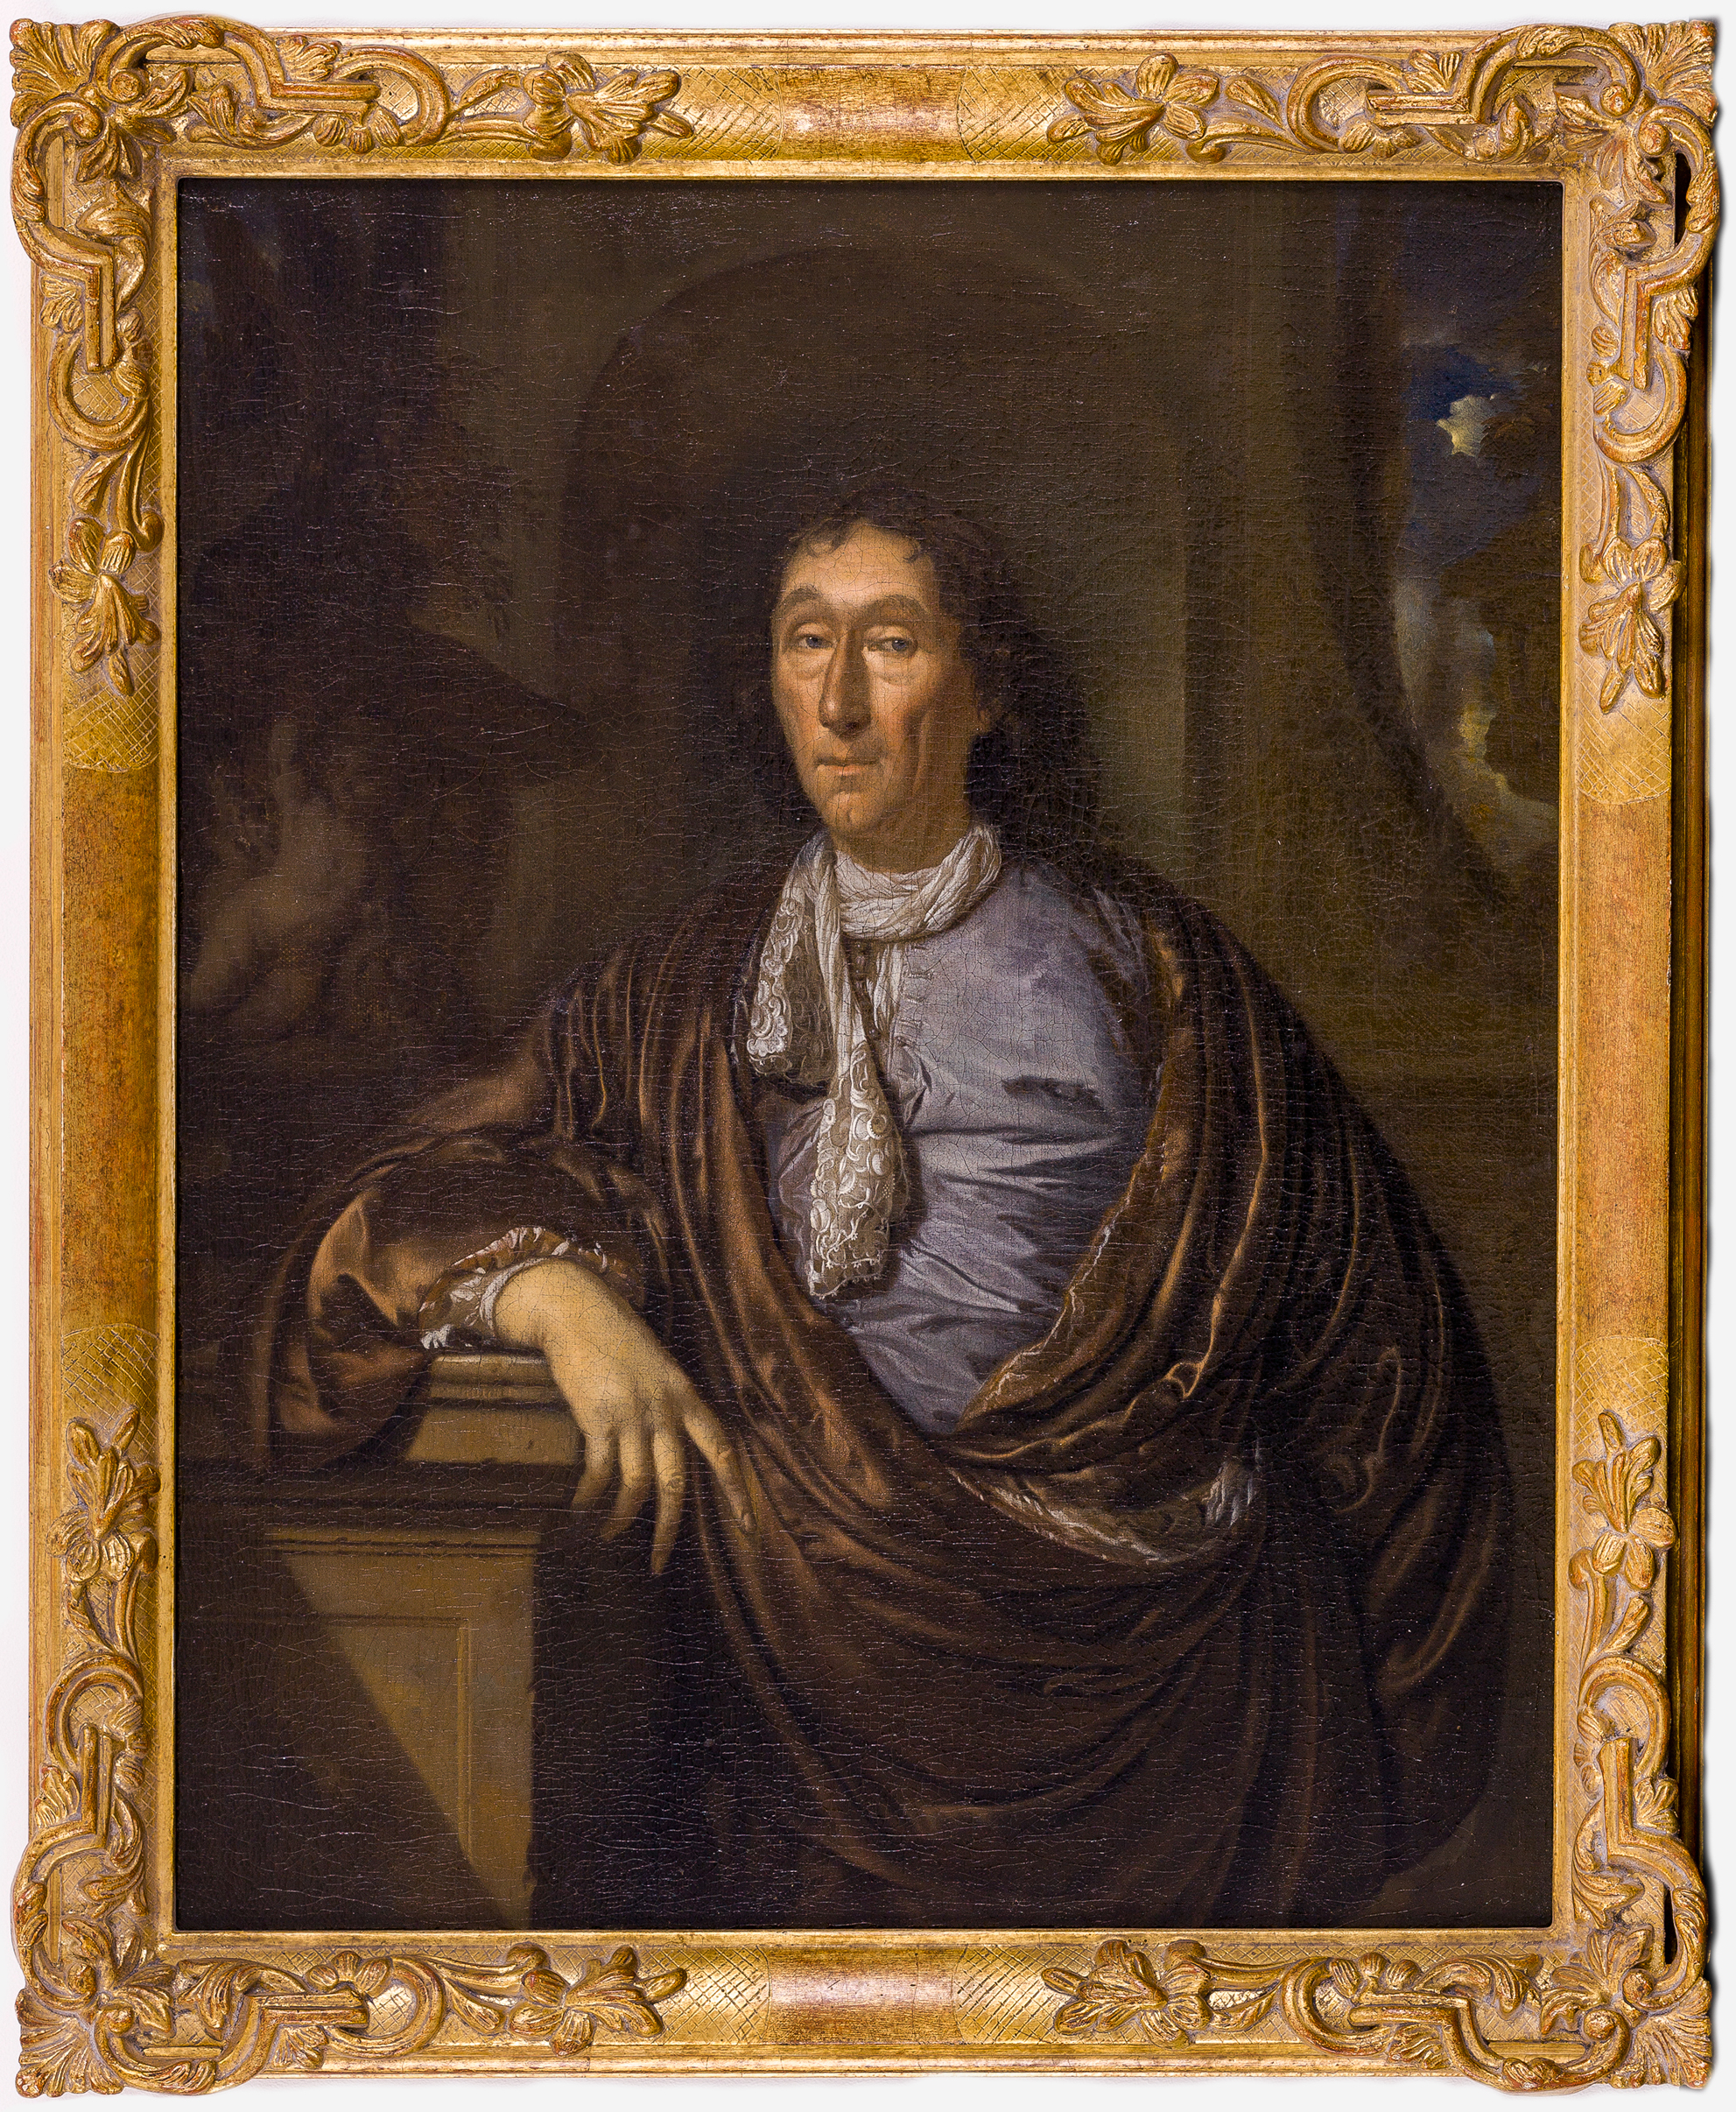 Pieter van der Werff